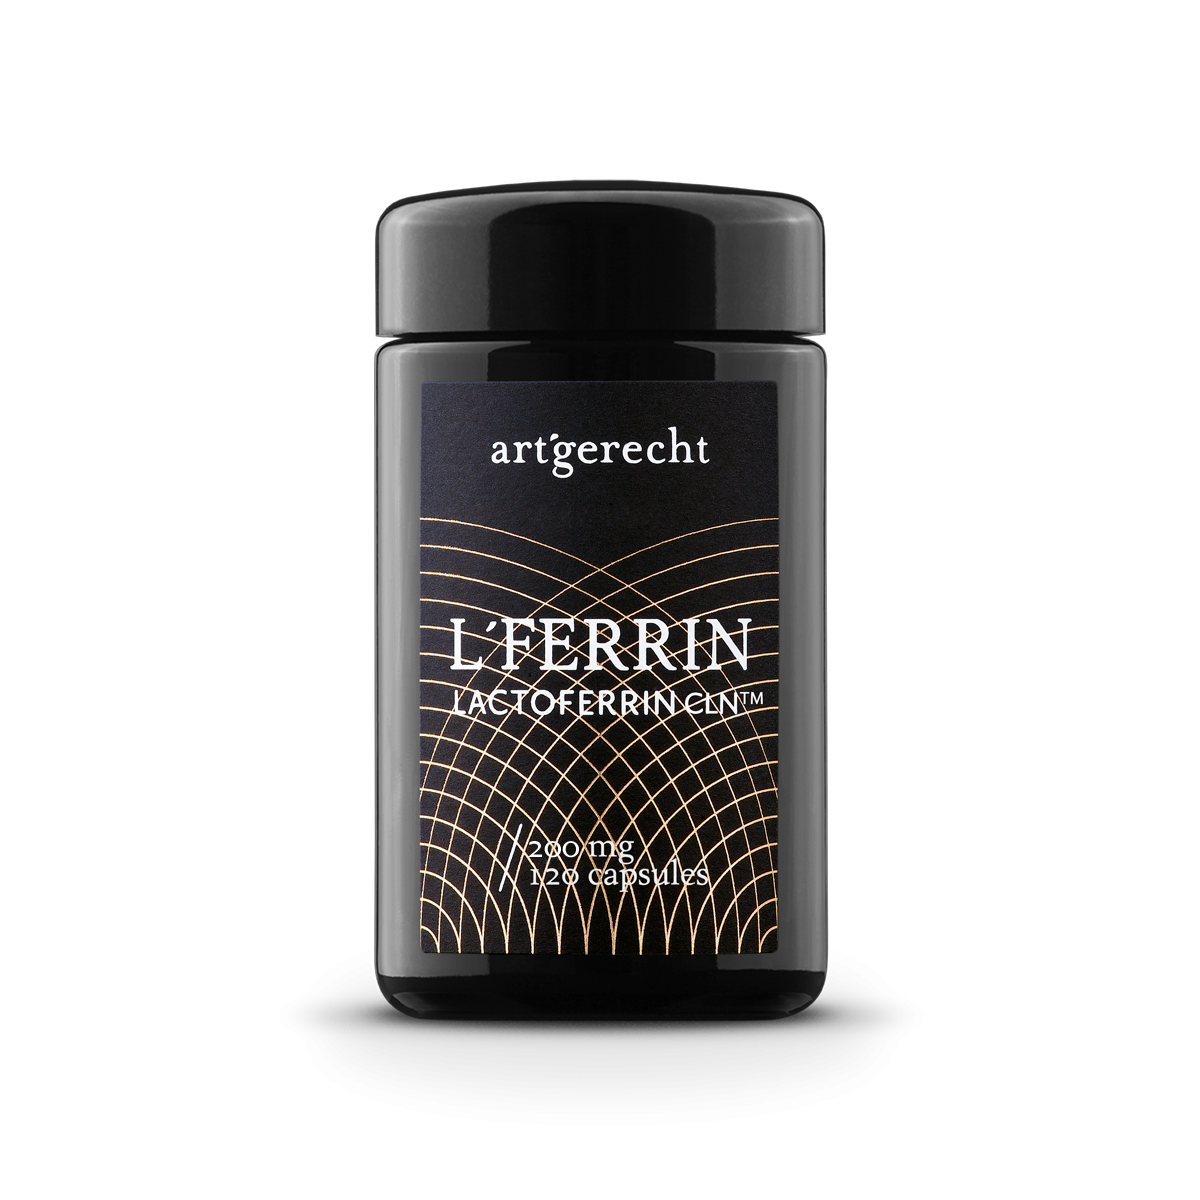 L’FERRIN - Reines Lactoferrin CLN® - 120 Kapseln